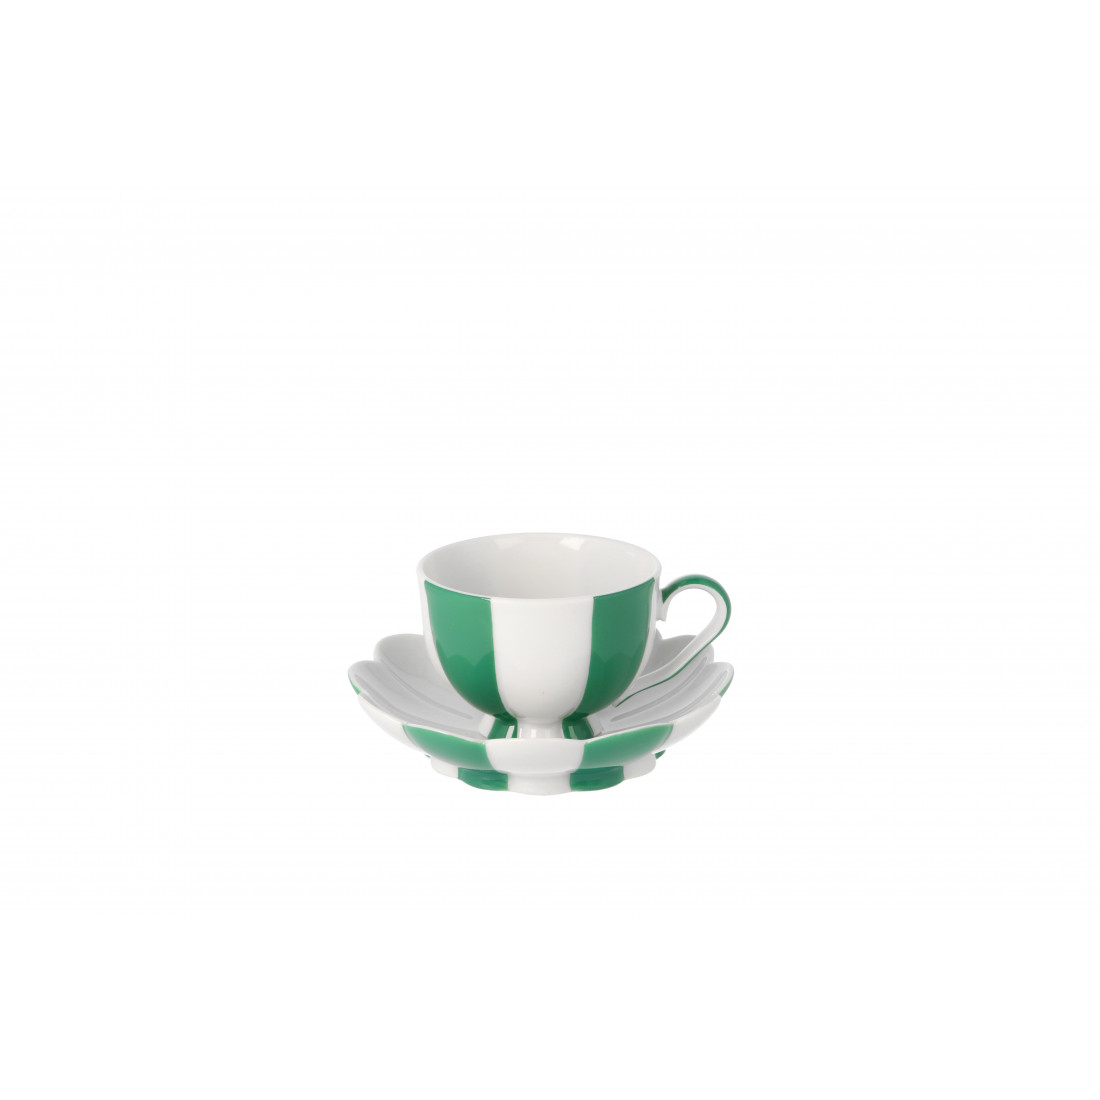 MOCHA CUP MELON, EMERALD GREEN / WHITE